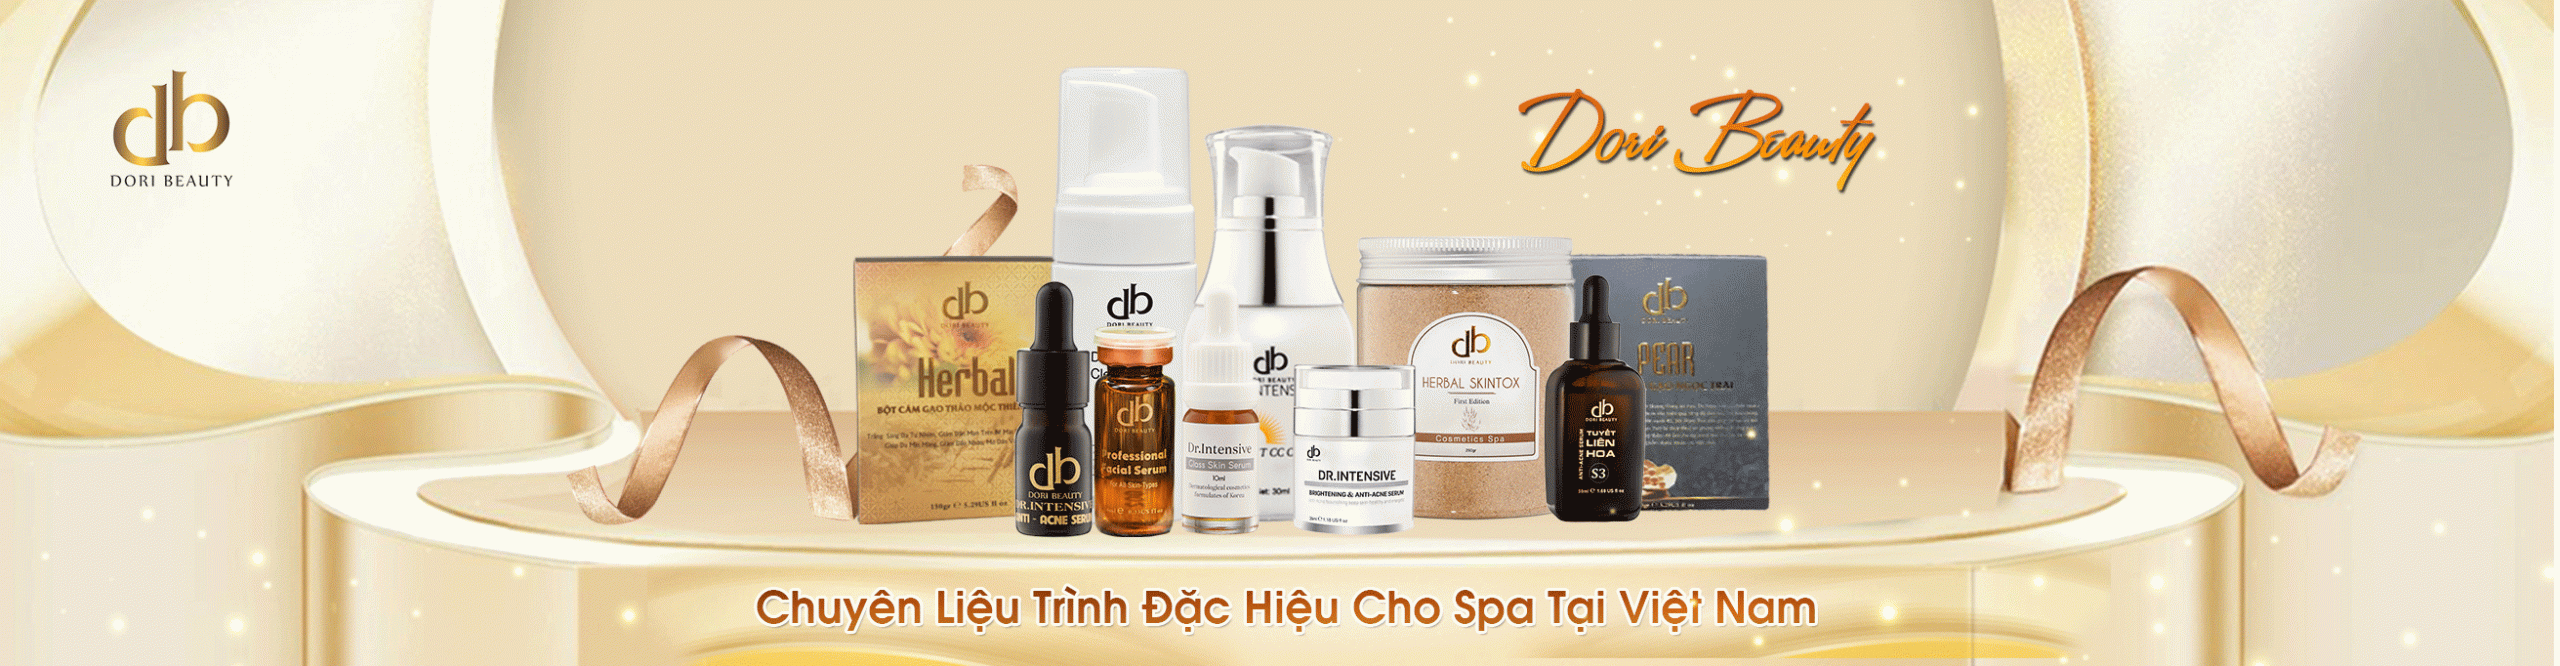 learn skin care, cosmetic tattoo spray in Tuyen Quang